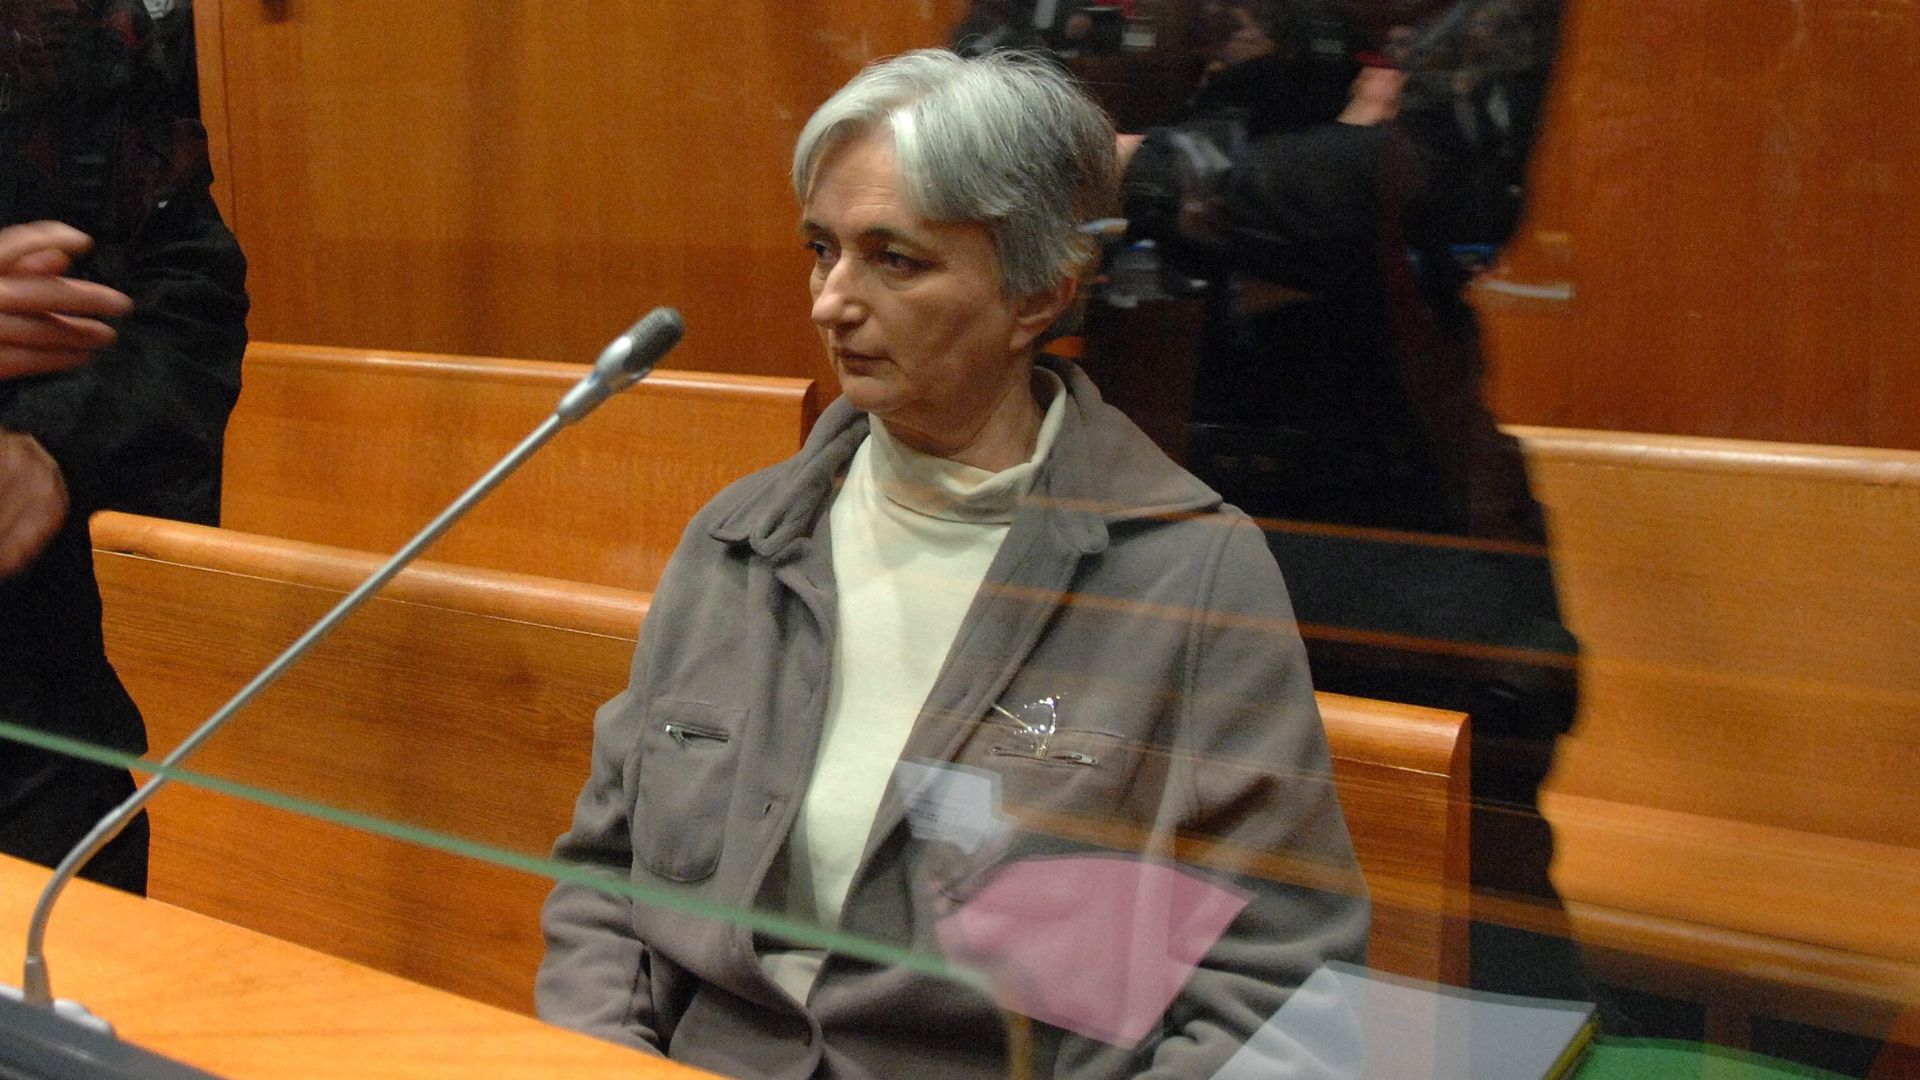 Monique Olivier, ex-mulher de assassino em série da França, é condenada à prisão perpétua; entenda caso